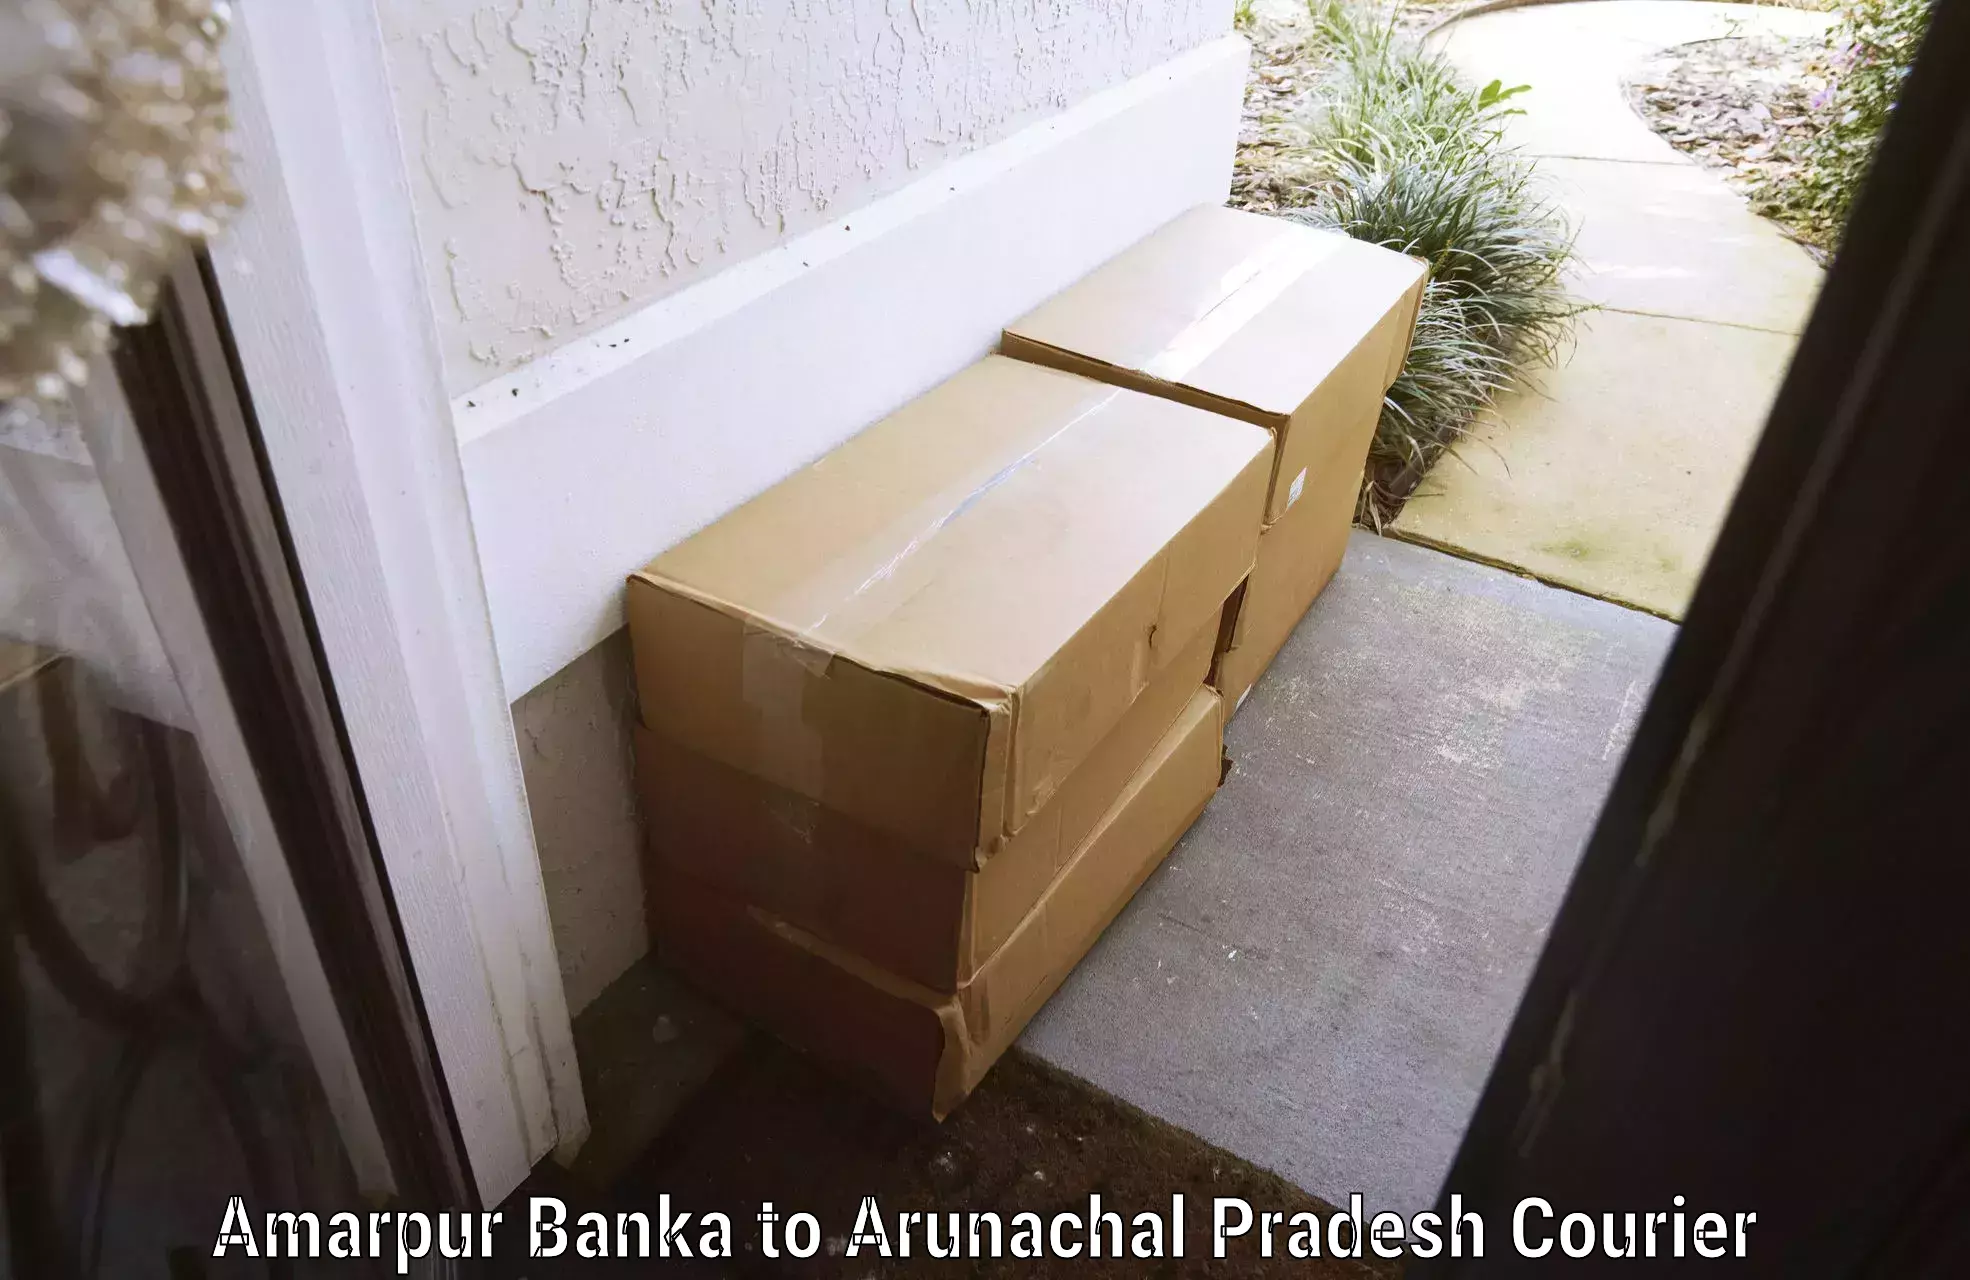 Baggage transport scheduler Amarpur Banka to Namsai